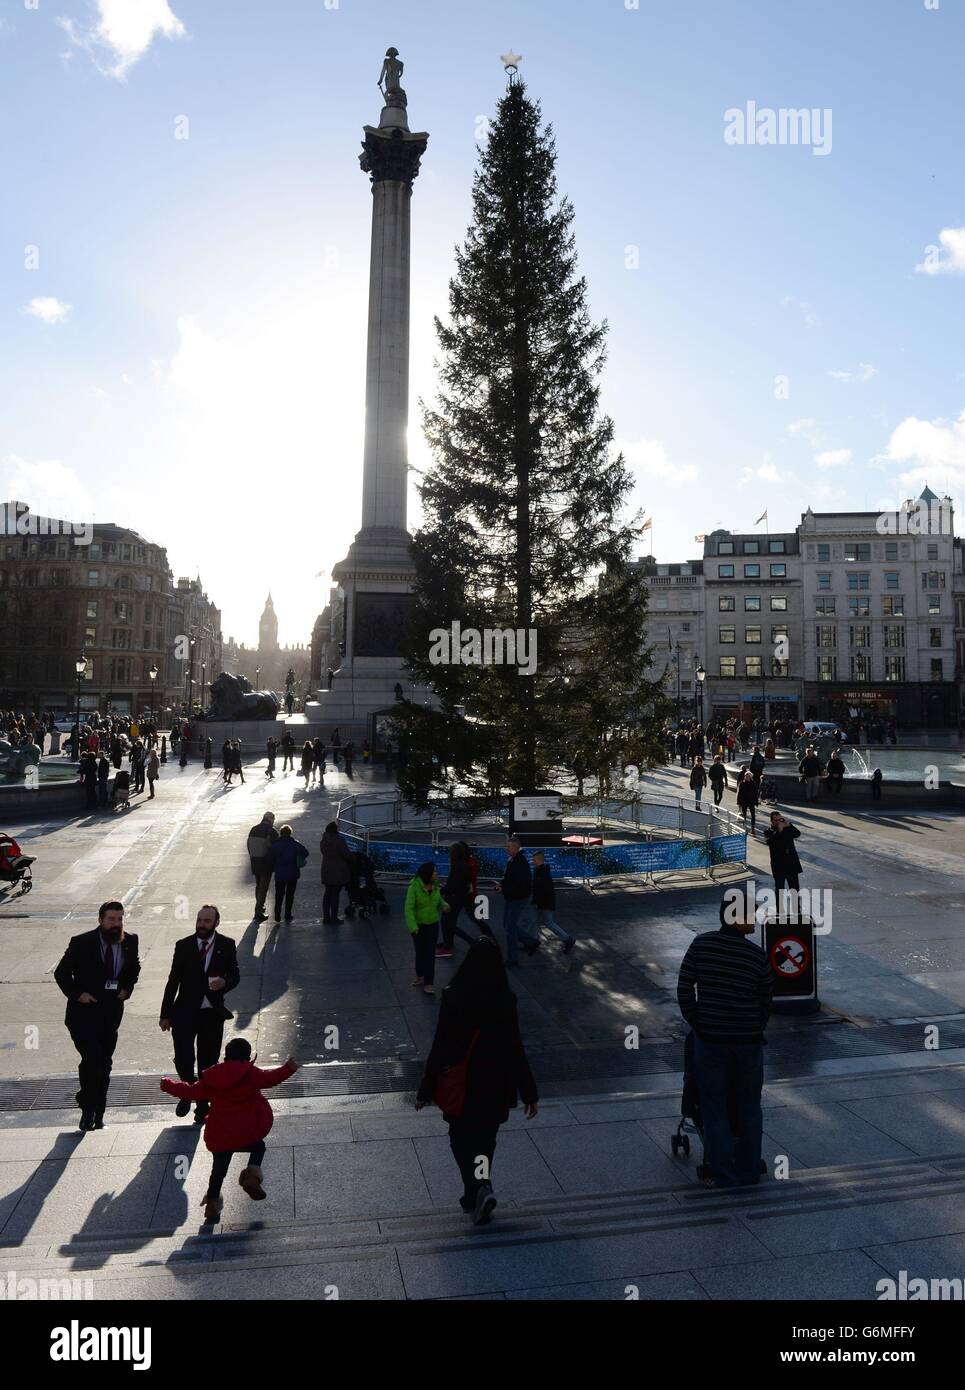 Christmas in London. Trafalgar Square in central London. Stock Photo